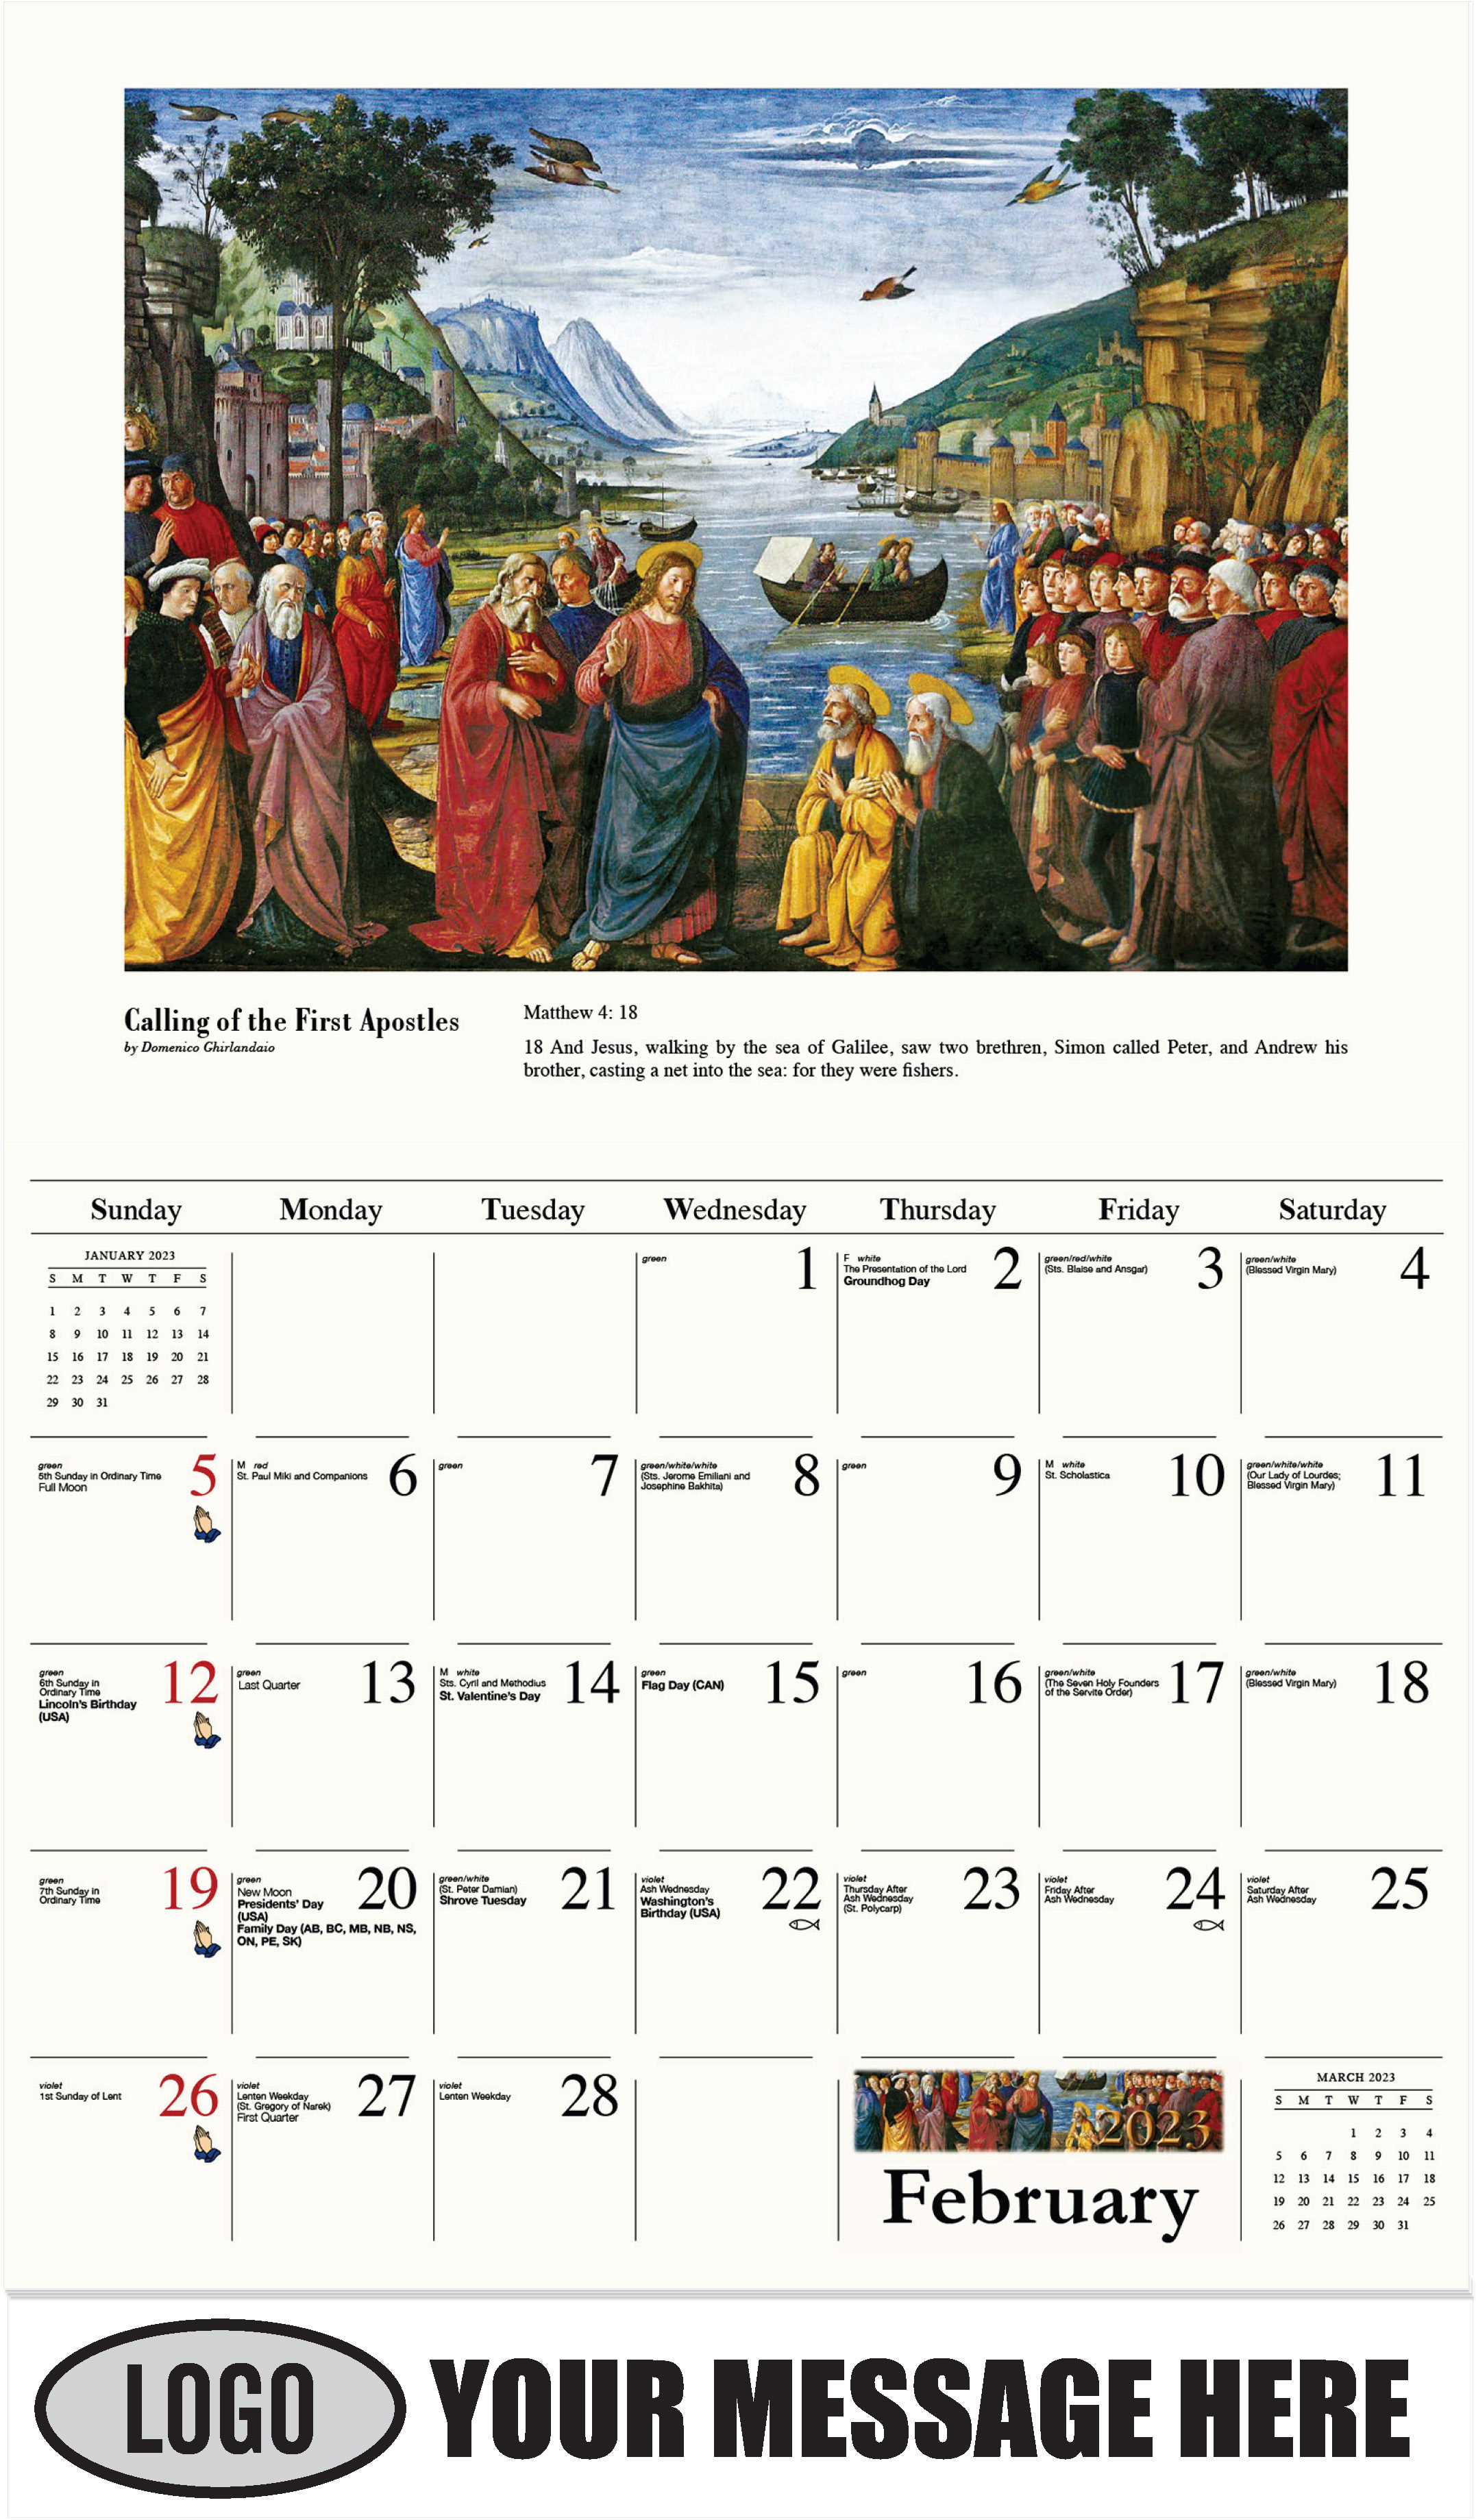 February - Catholic Inspiration 2023 Promotional Calendar